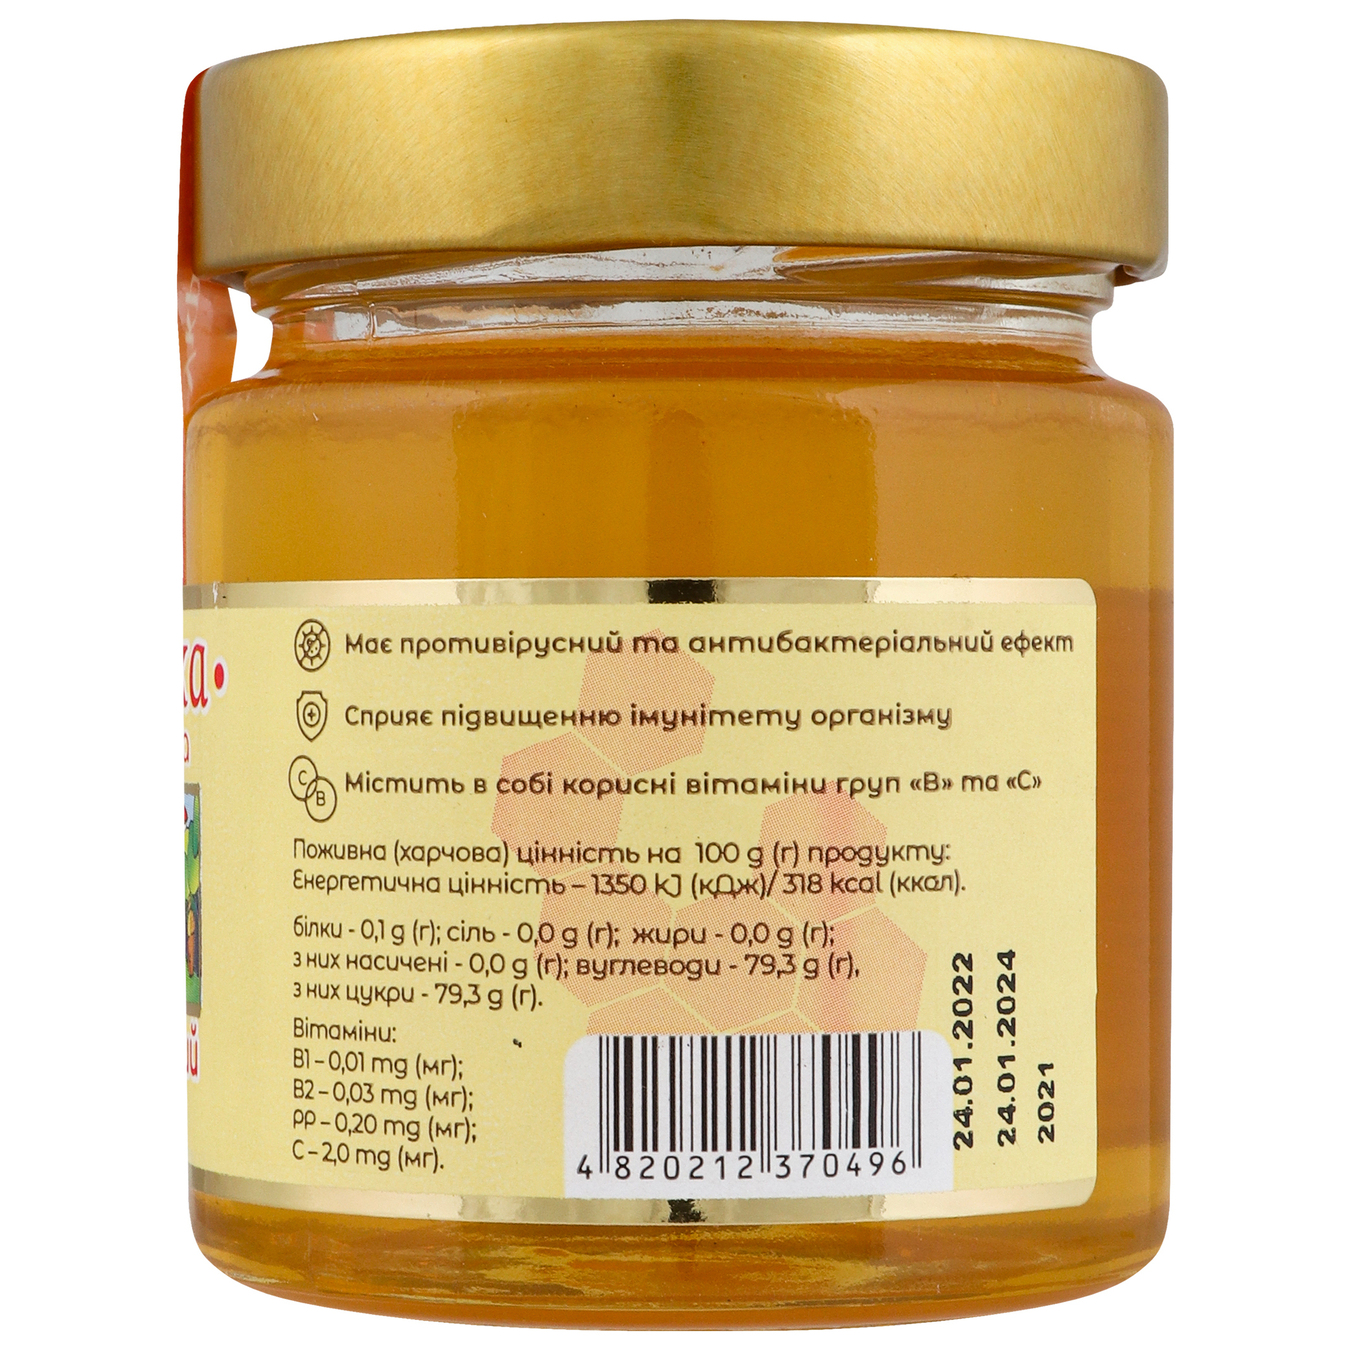 Acacia honey Pasika natural glass jar 250g 4